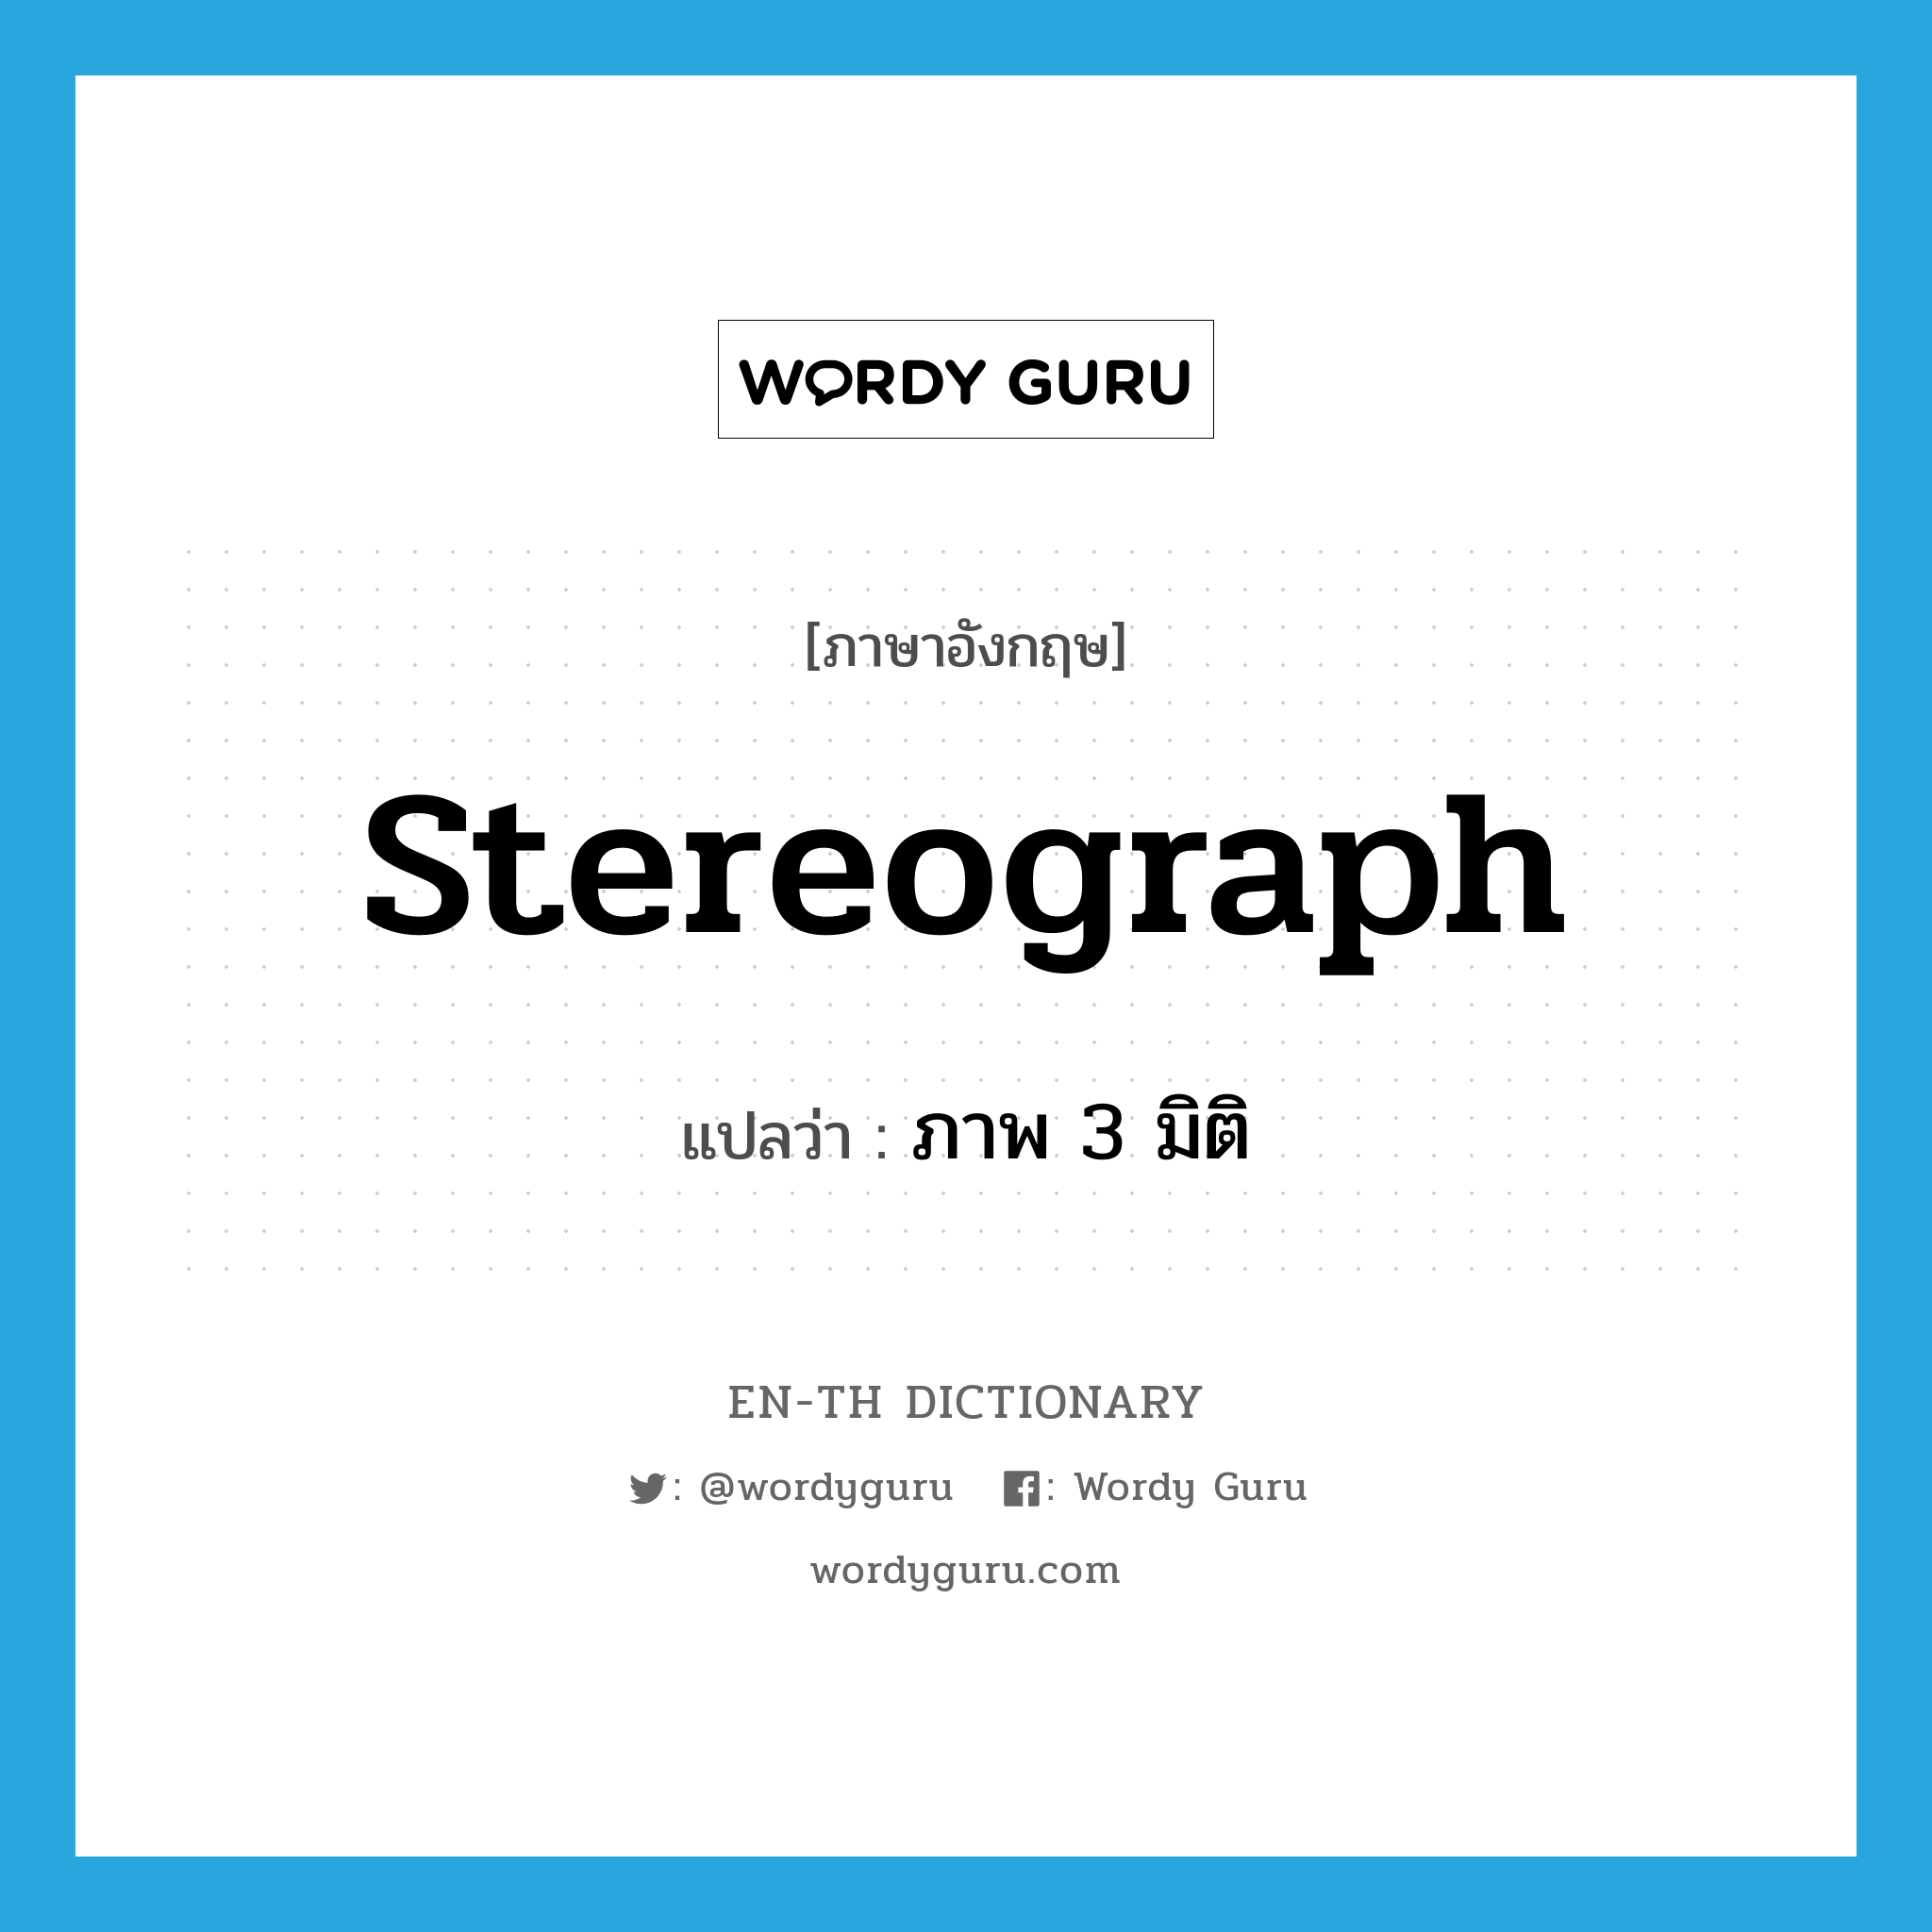 stereograph แปลว่า?, คำศัพท์ภาษาอังกฤษ stereograph แปลว่า ภาพ 3 มิติ ประเภท N หมวด N